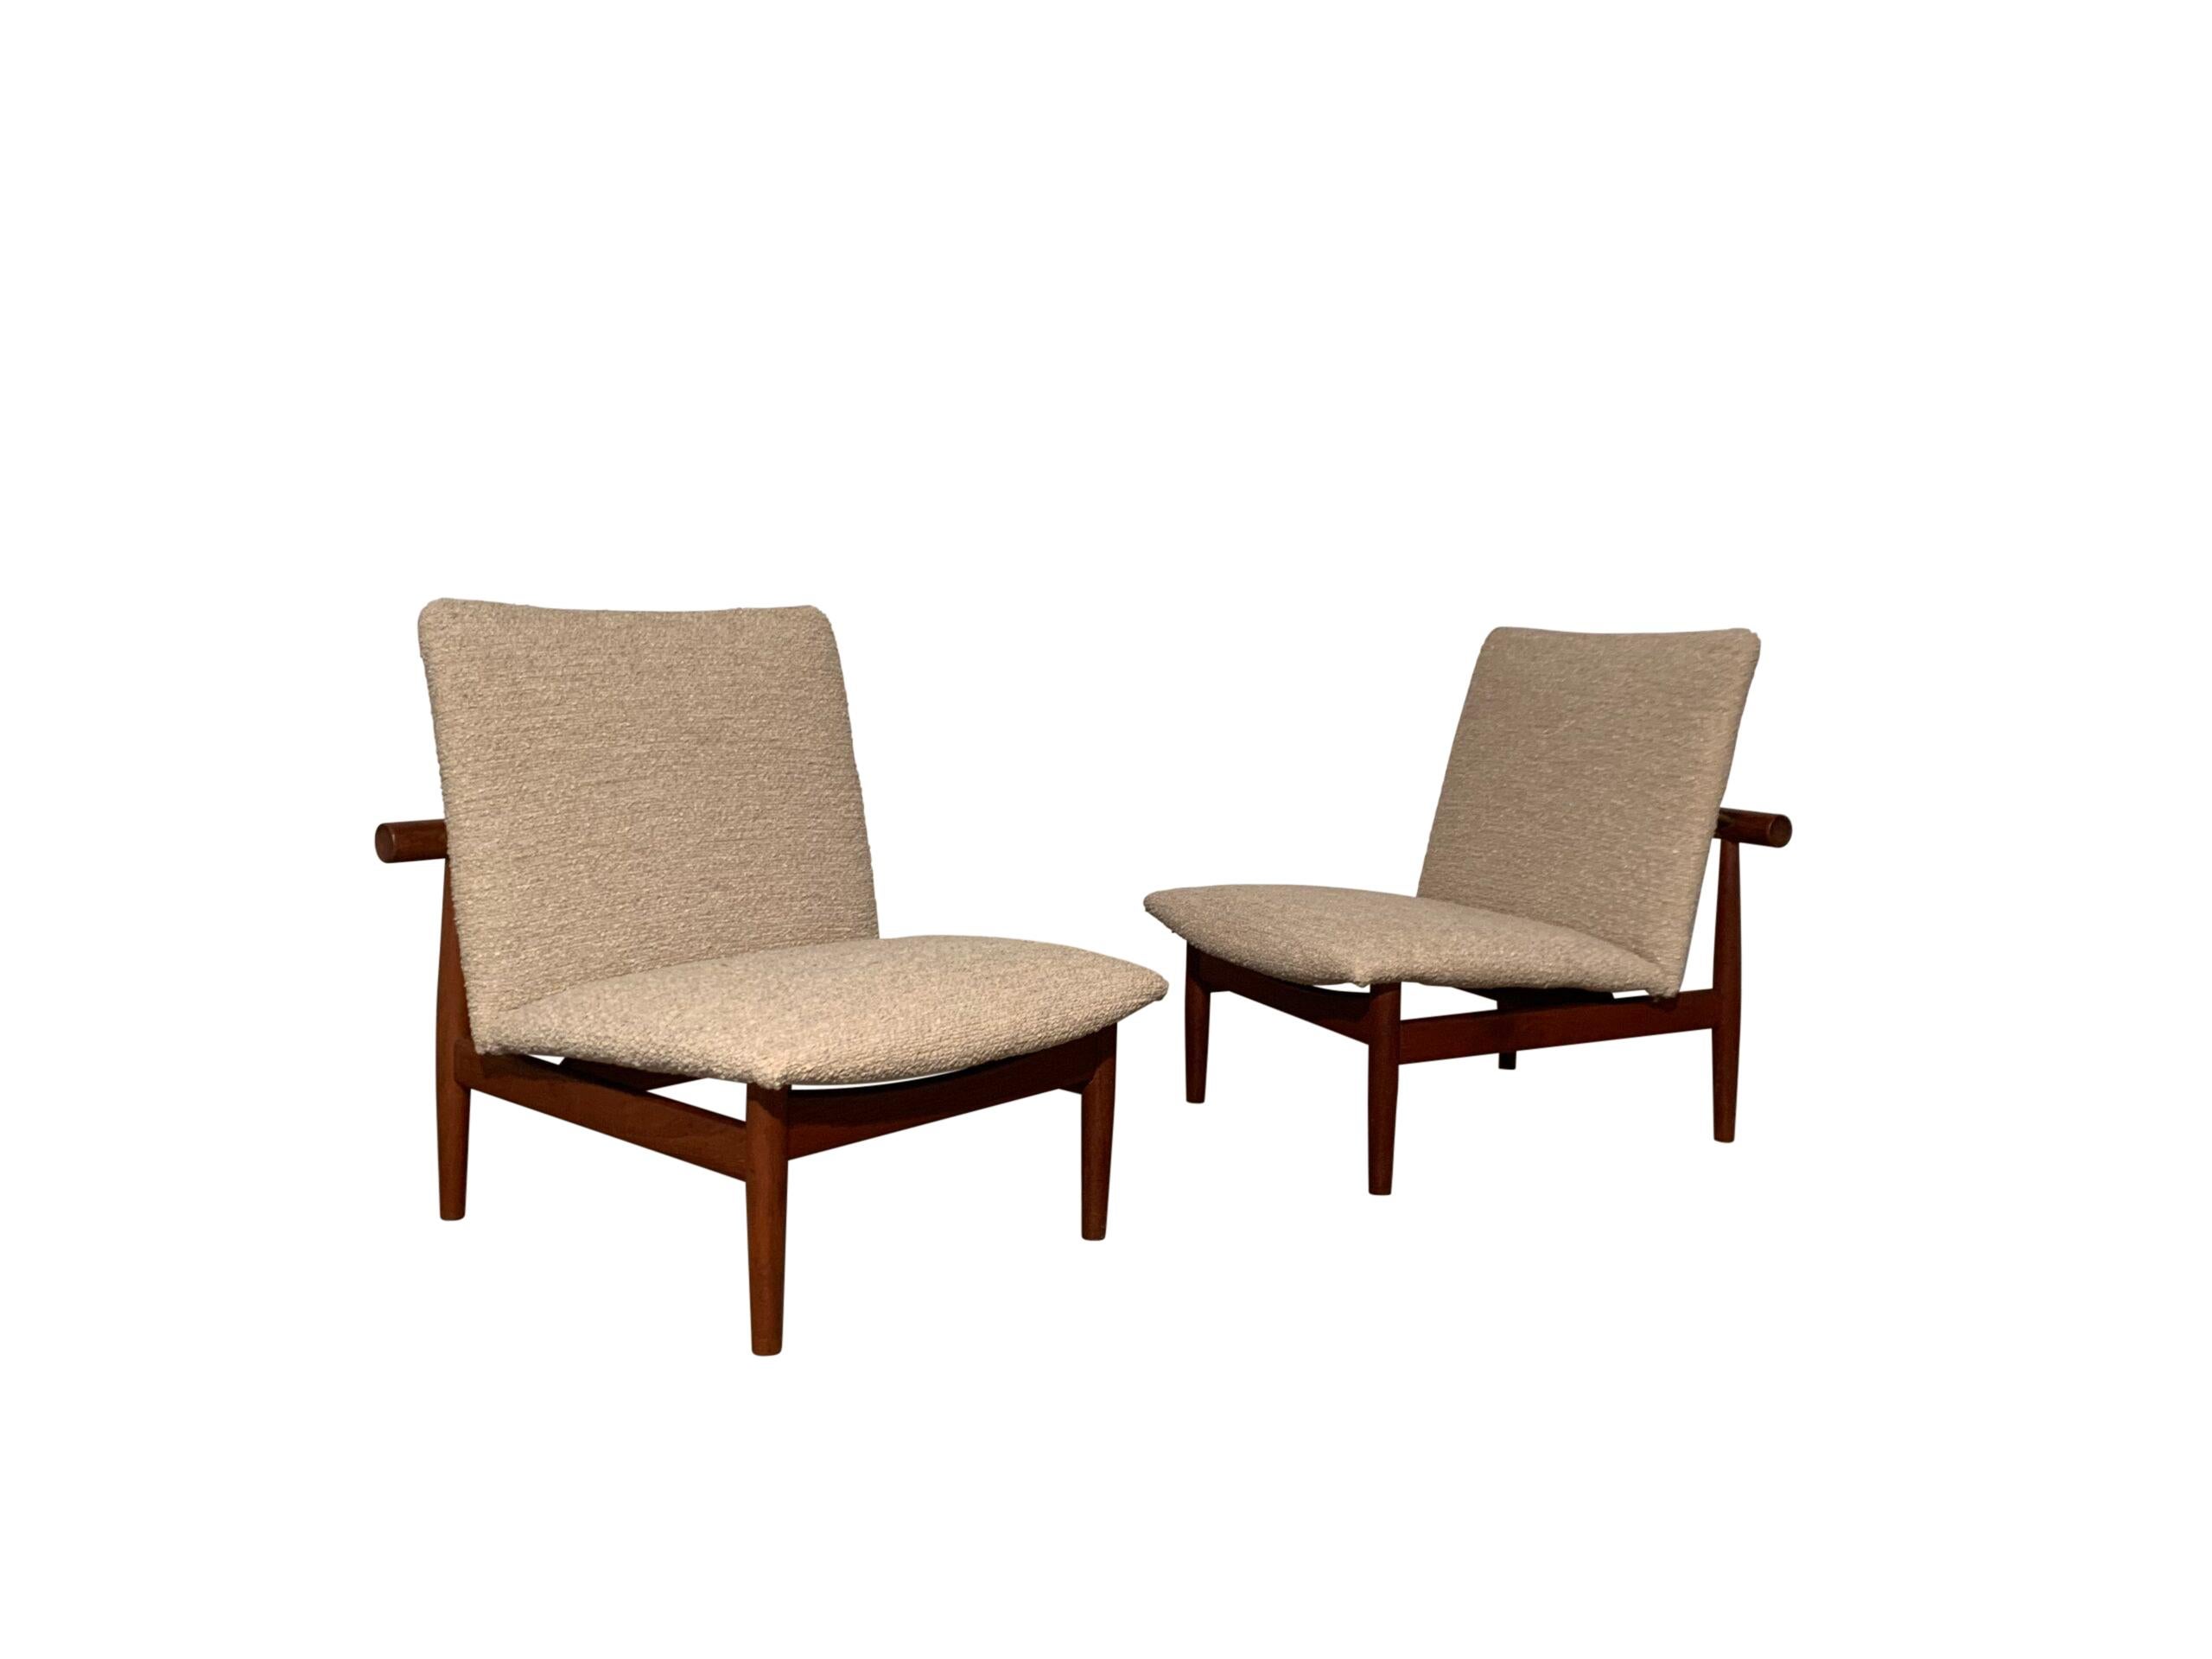 Cette paire de chaises longues, 'modèle 137', a été conçue en 1957 et fabriquée par le fabricant de meubles France & Son. La série Japon s'inspire des techniques de construction traditionnelles japonaises. Défini par un dossier horizontal visible et